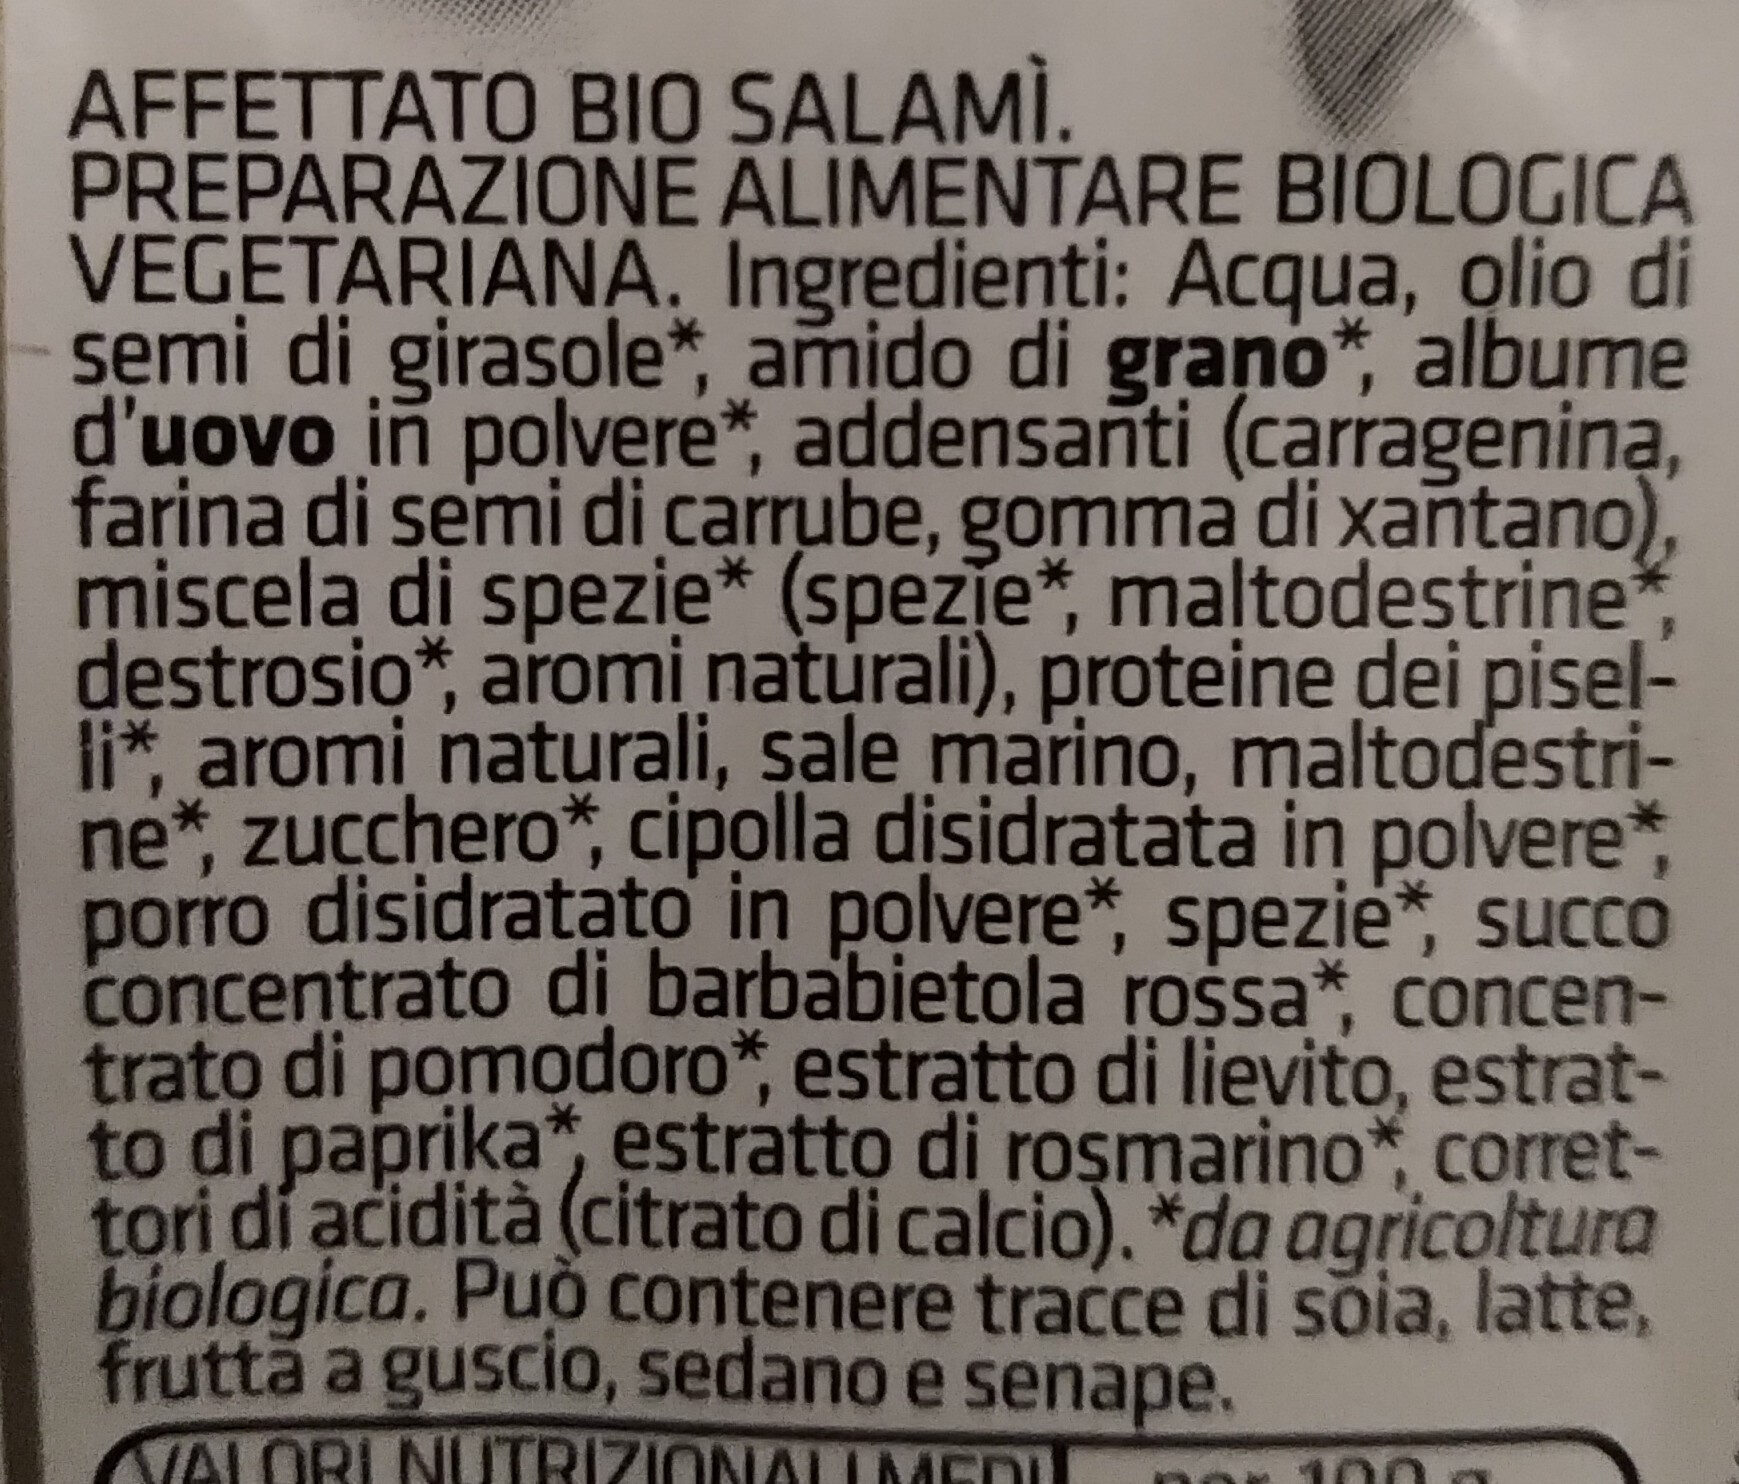 Affettato bio salamì - Ingredients - it